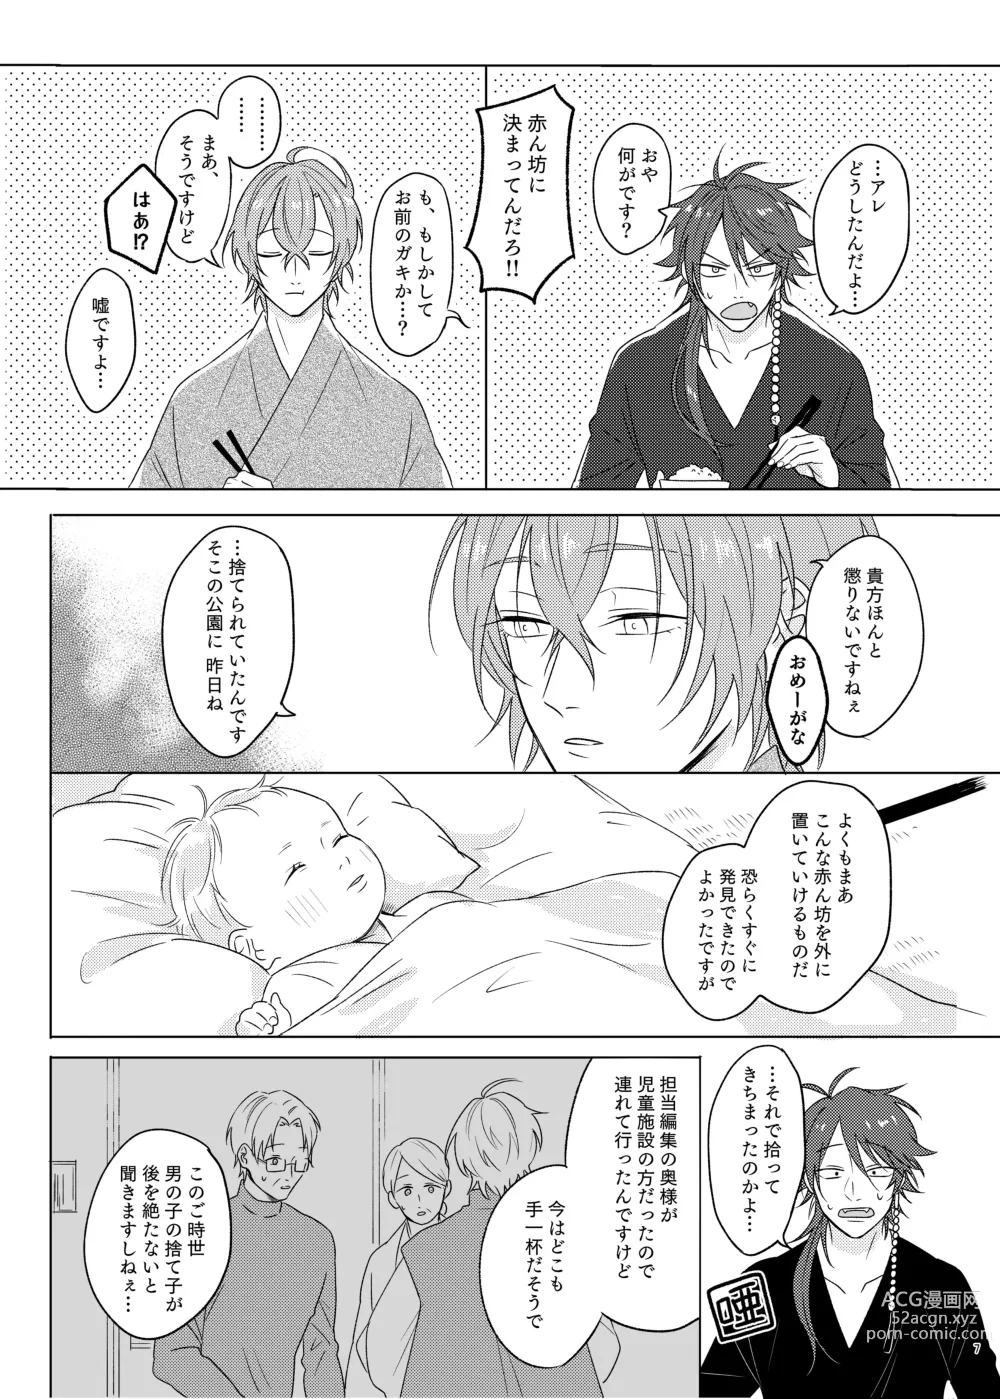 Page 7 of doujinshi Kami sama no ko